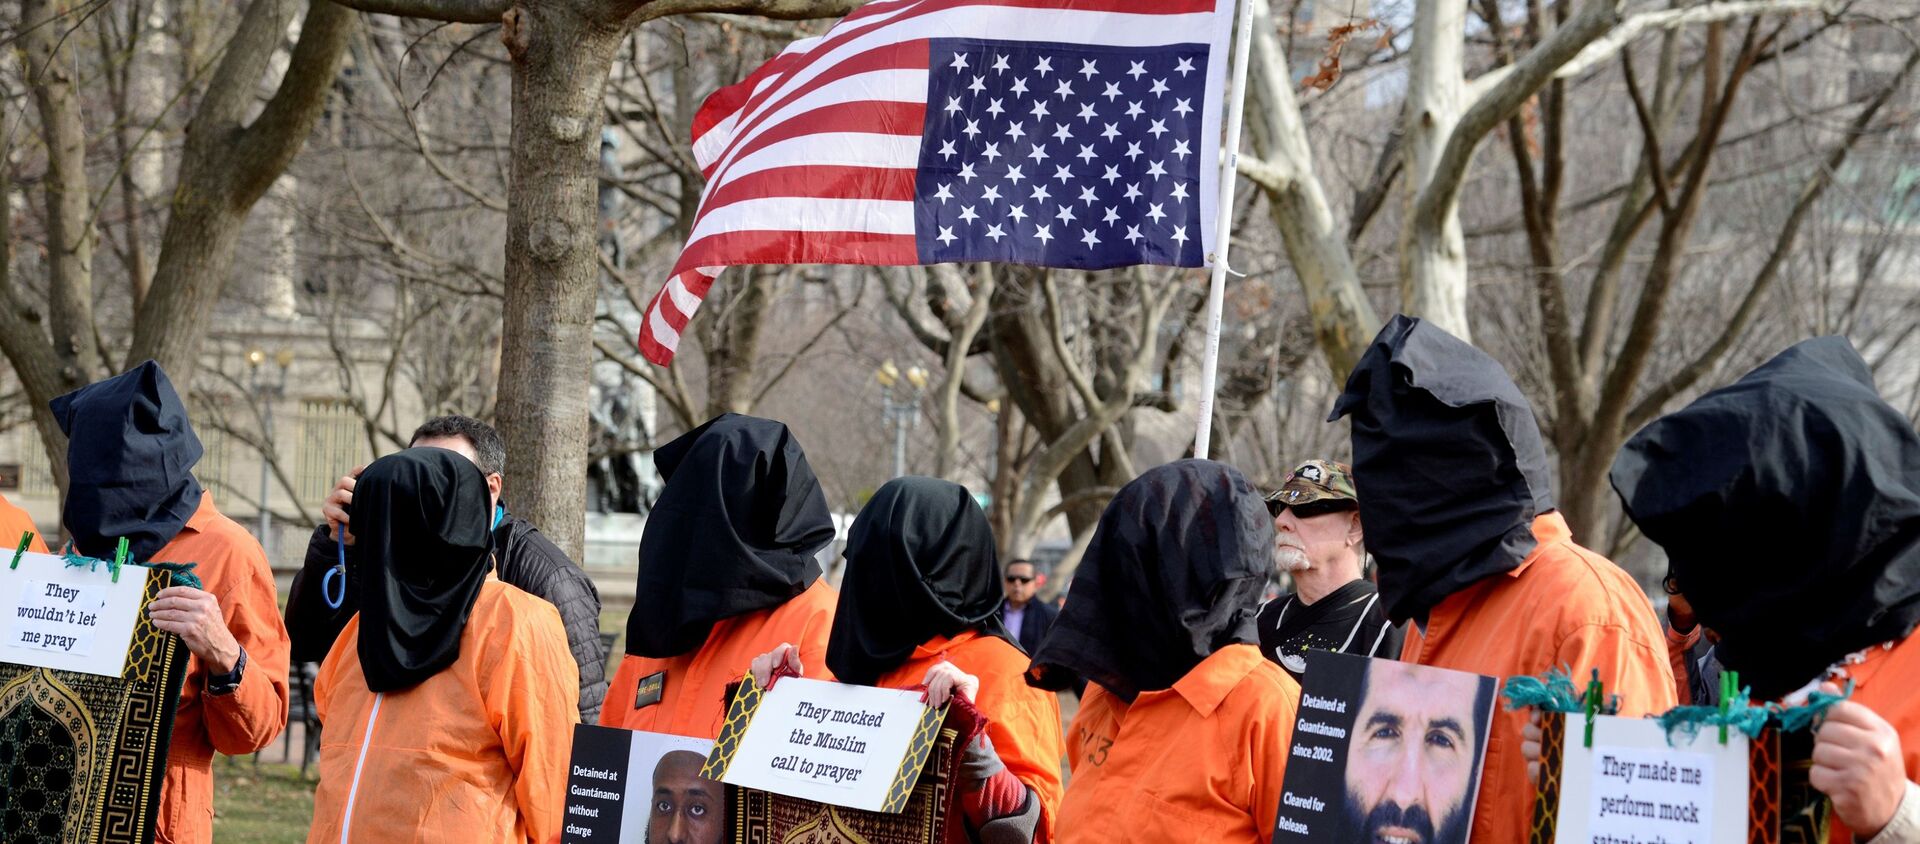 Beyaz Saray önünde 18 yıl önce açılan Guantanamo esir kampının kapatılması ve işkencenin hesabının verilmesi için düzenlenen protesto gösterisi, 11 Ocak 2020 - Sputnik Türkiye, 1920, 22.01.2020